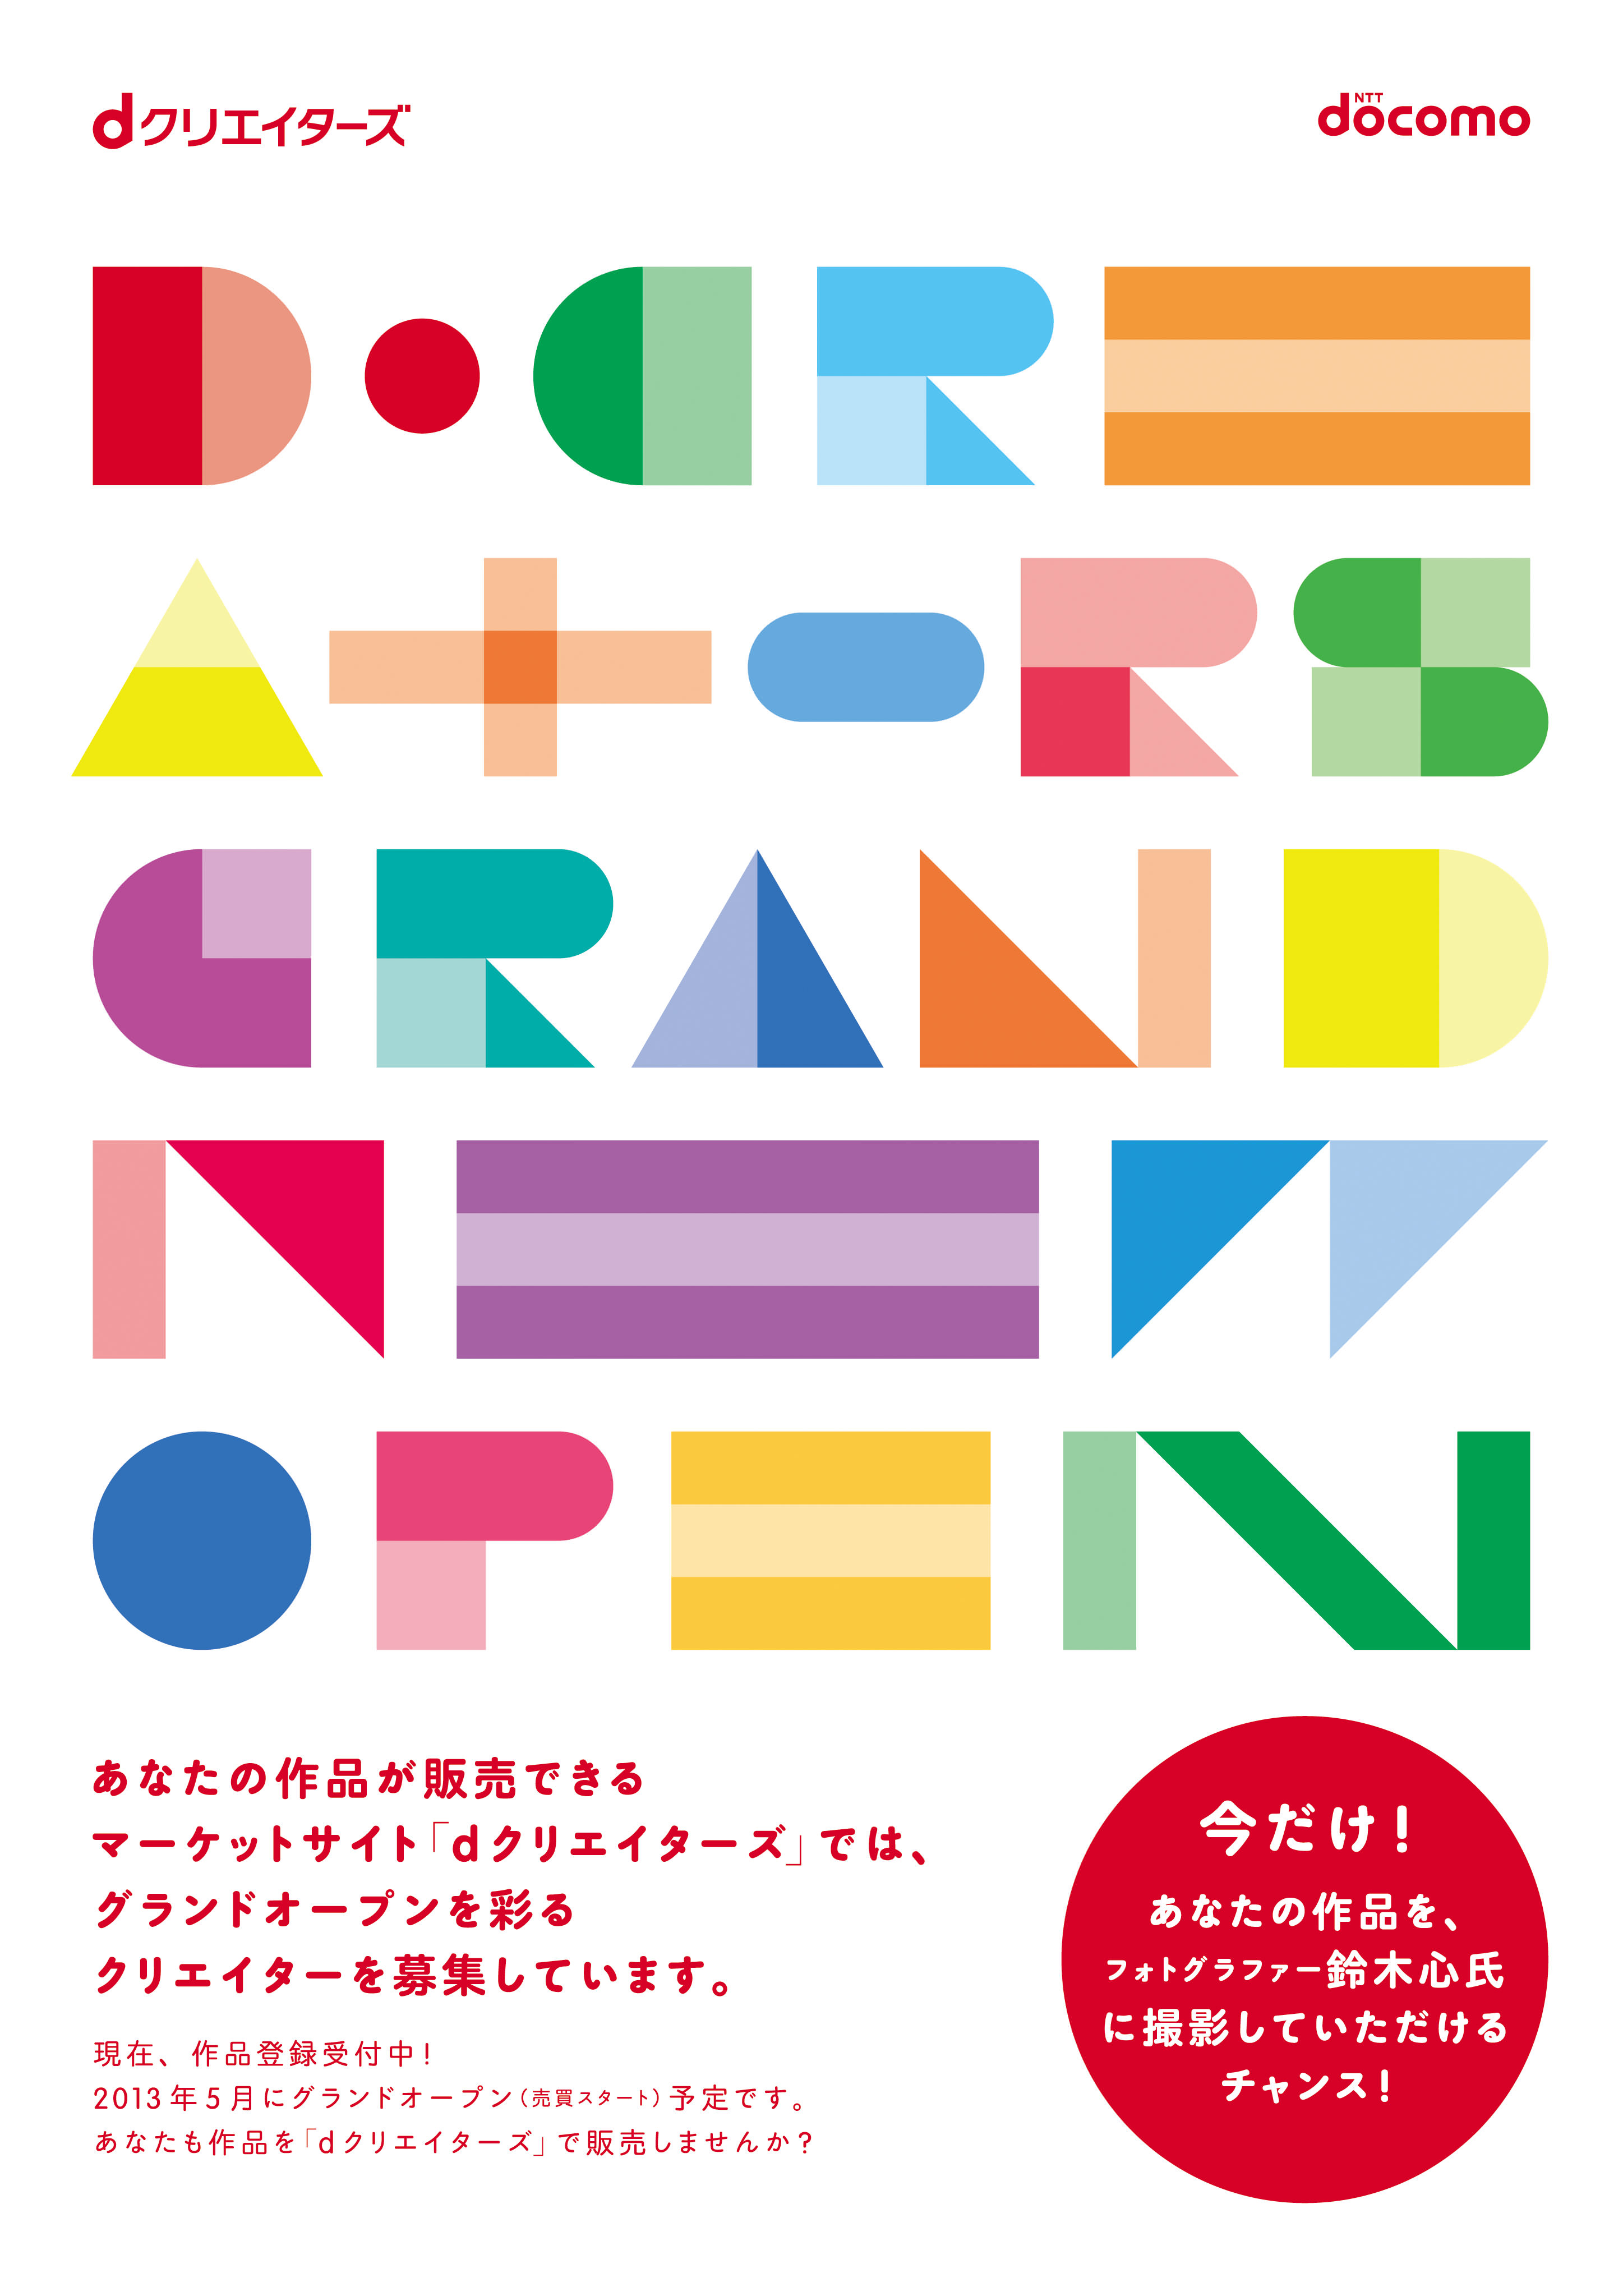 Dクリエイターズ「Grand New Open」 D Creators “Grand New Open”